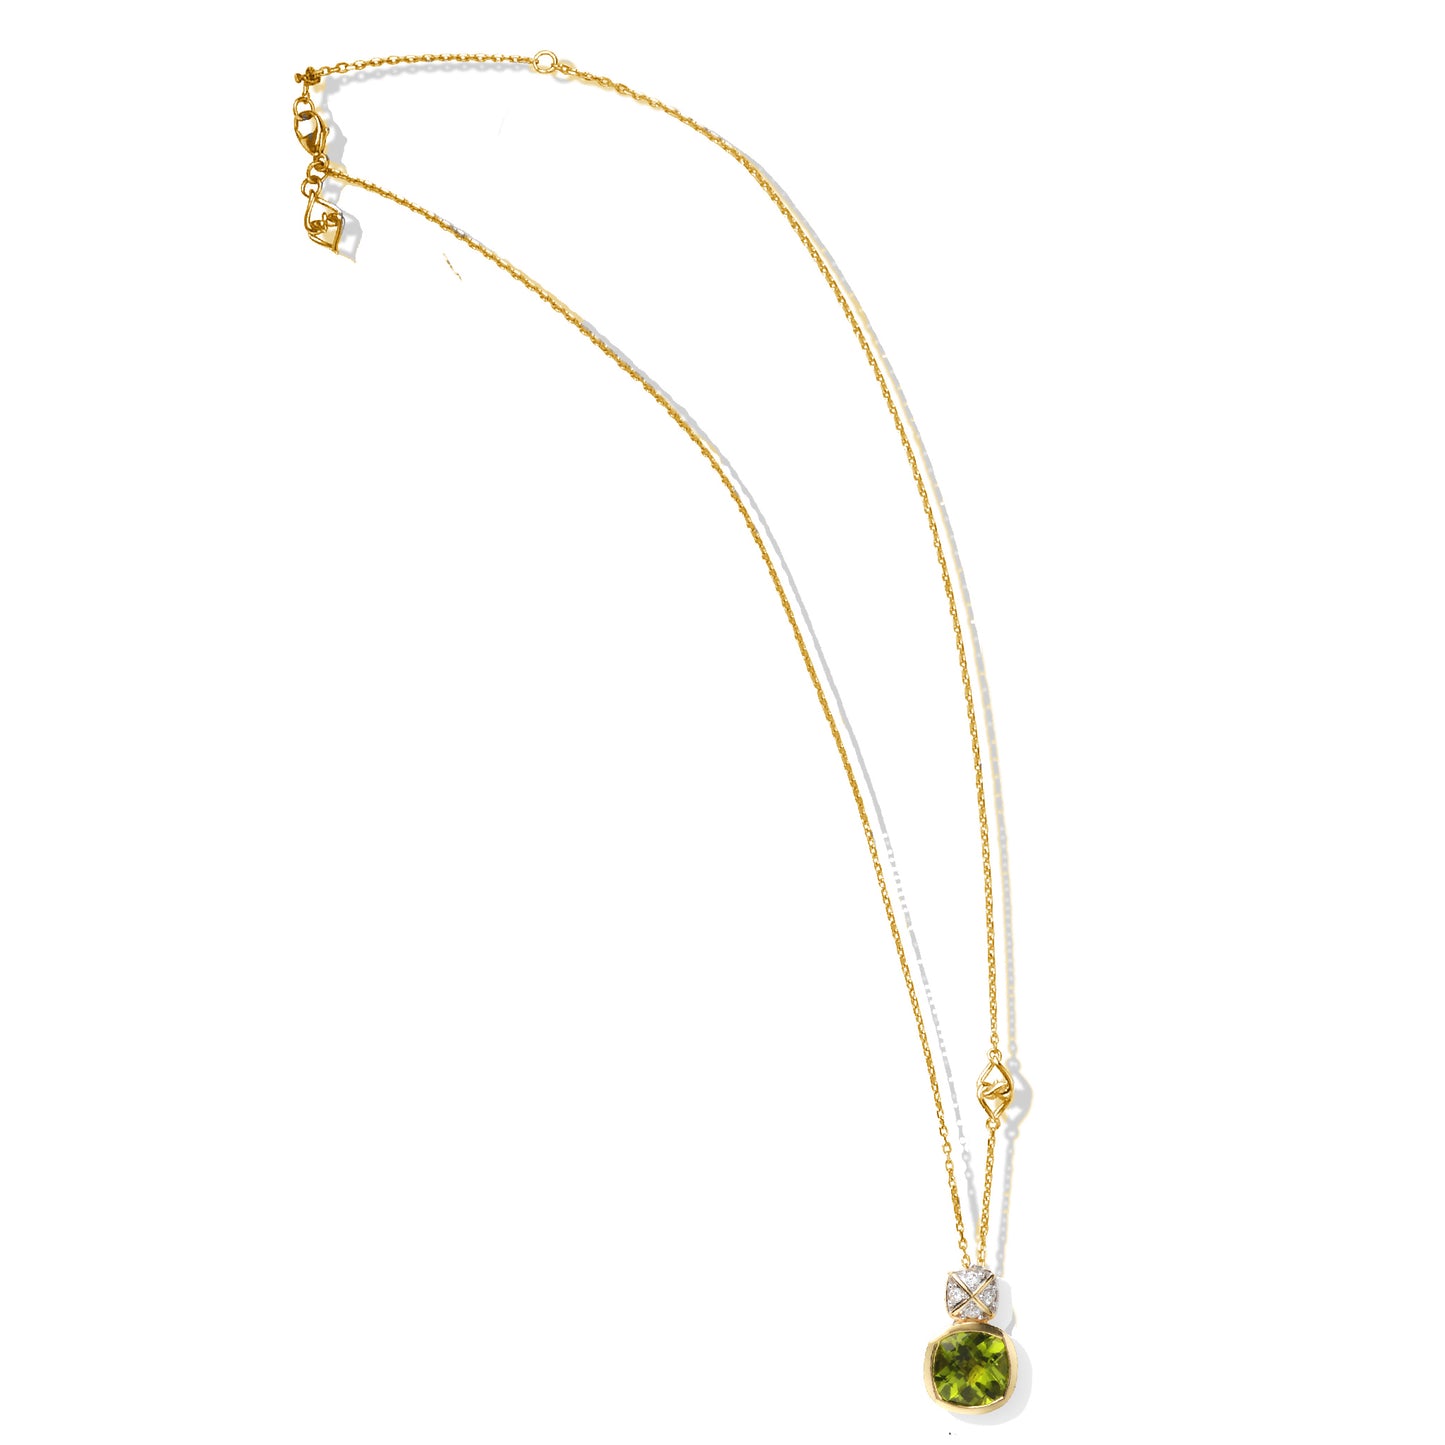 Peridot Pendant Necklace | Cushion Corner Peridot Pendant with White Diamonds and Yellow Gold